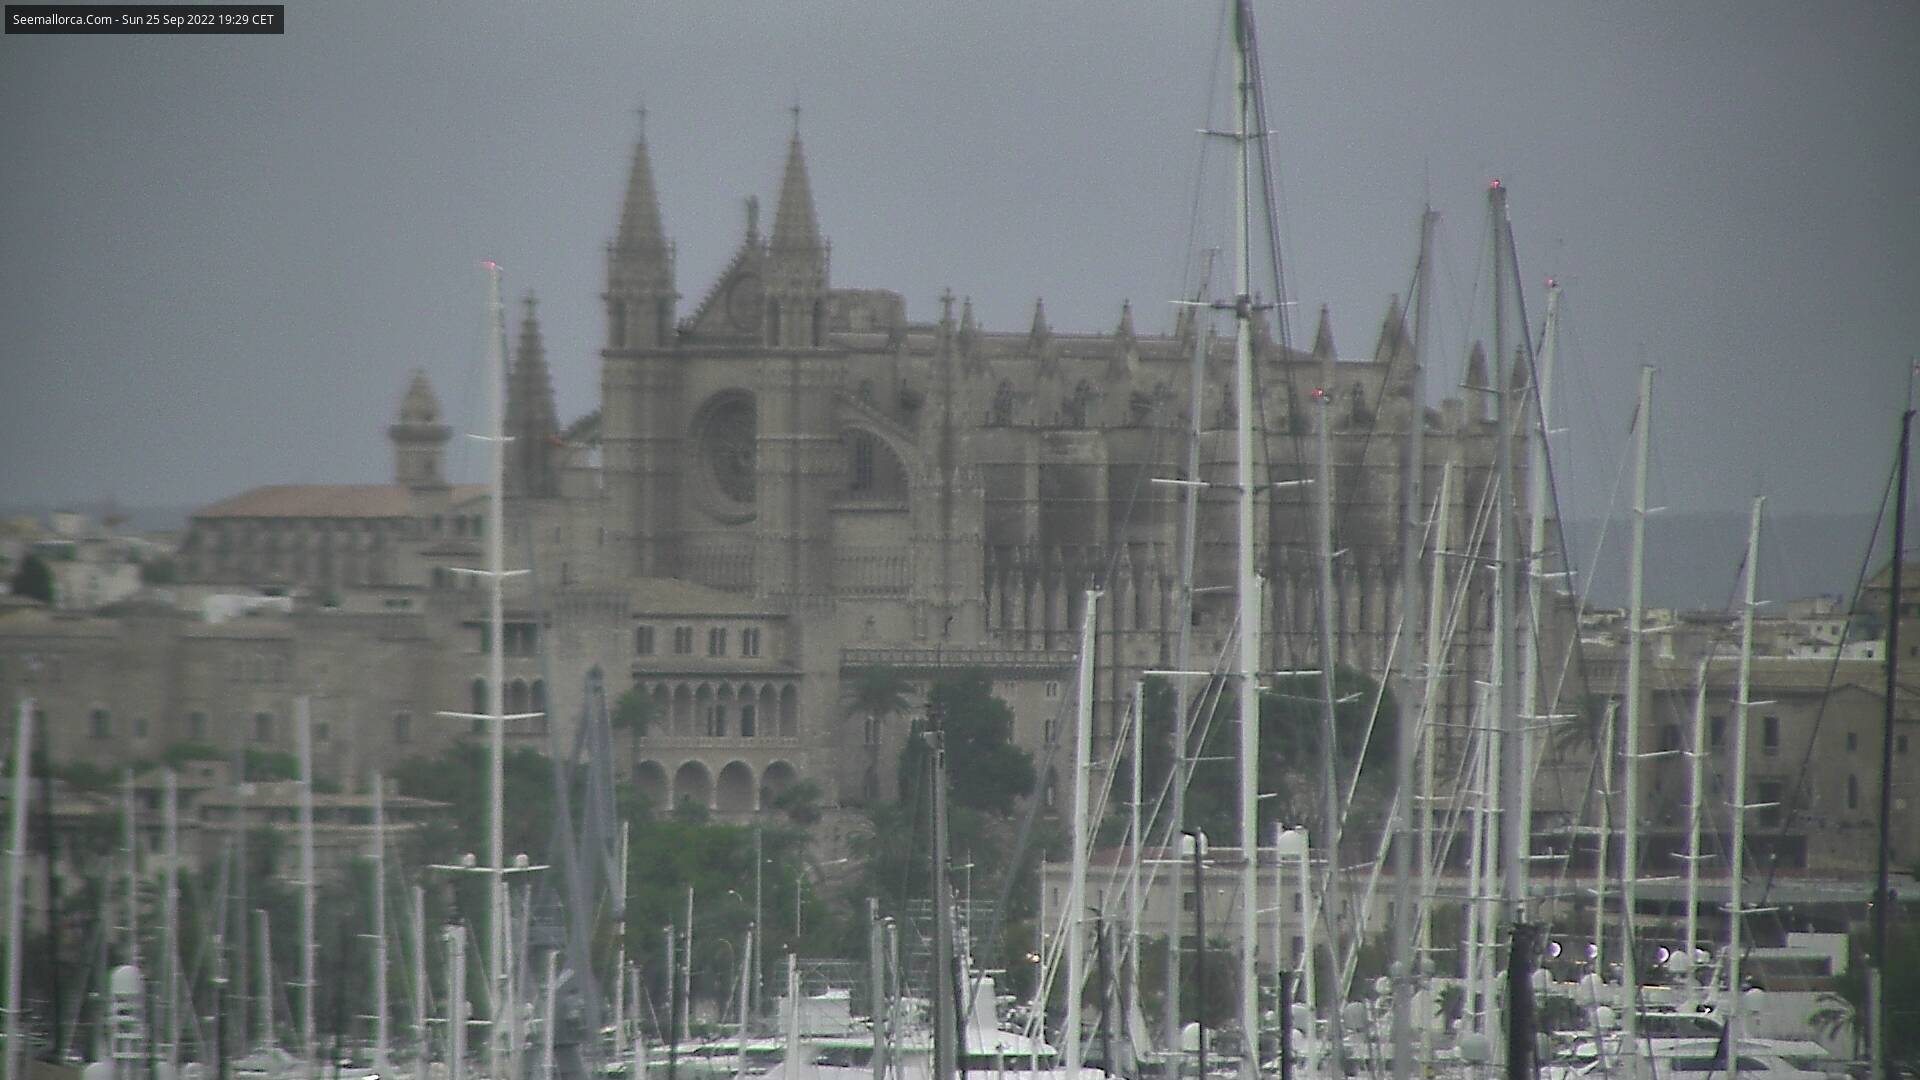 La Seu Cathedral webcam, Palma de Mallorca 